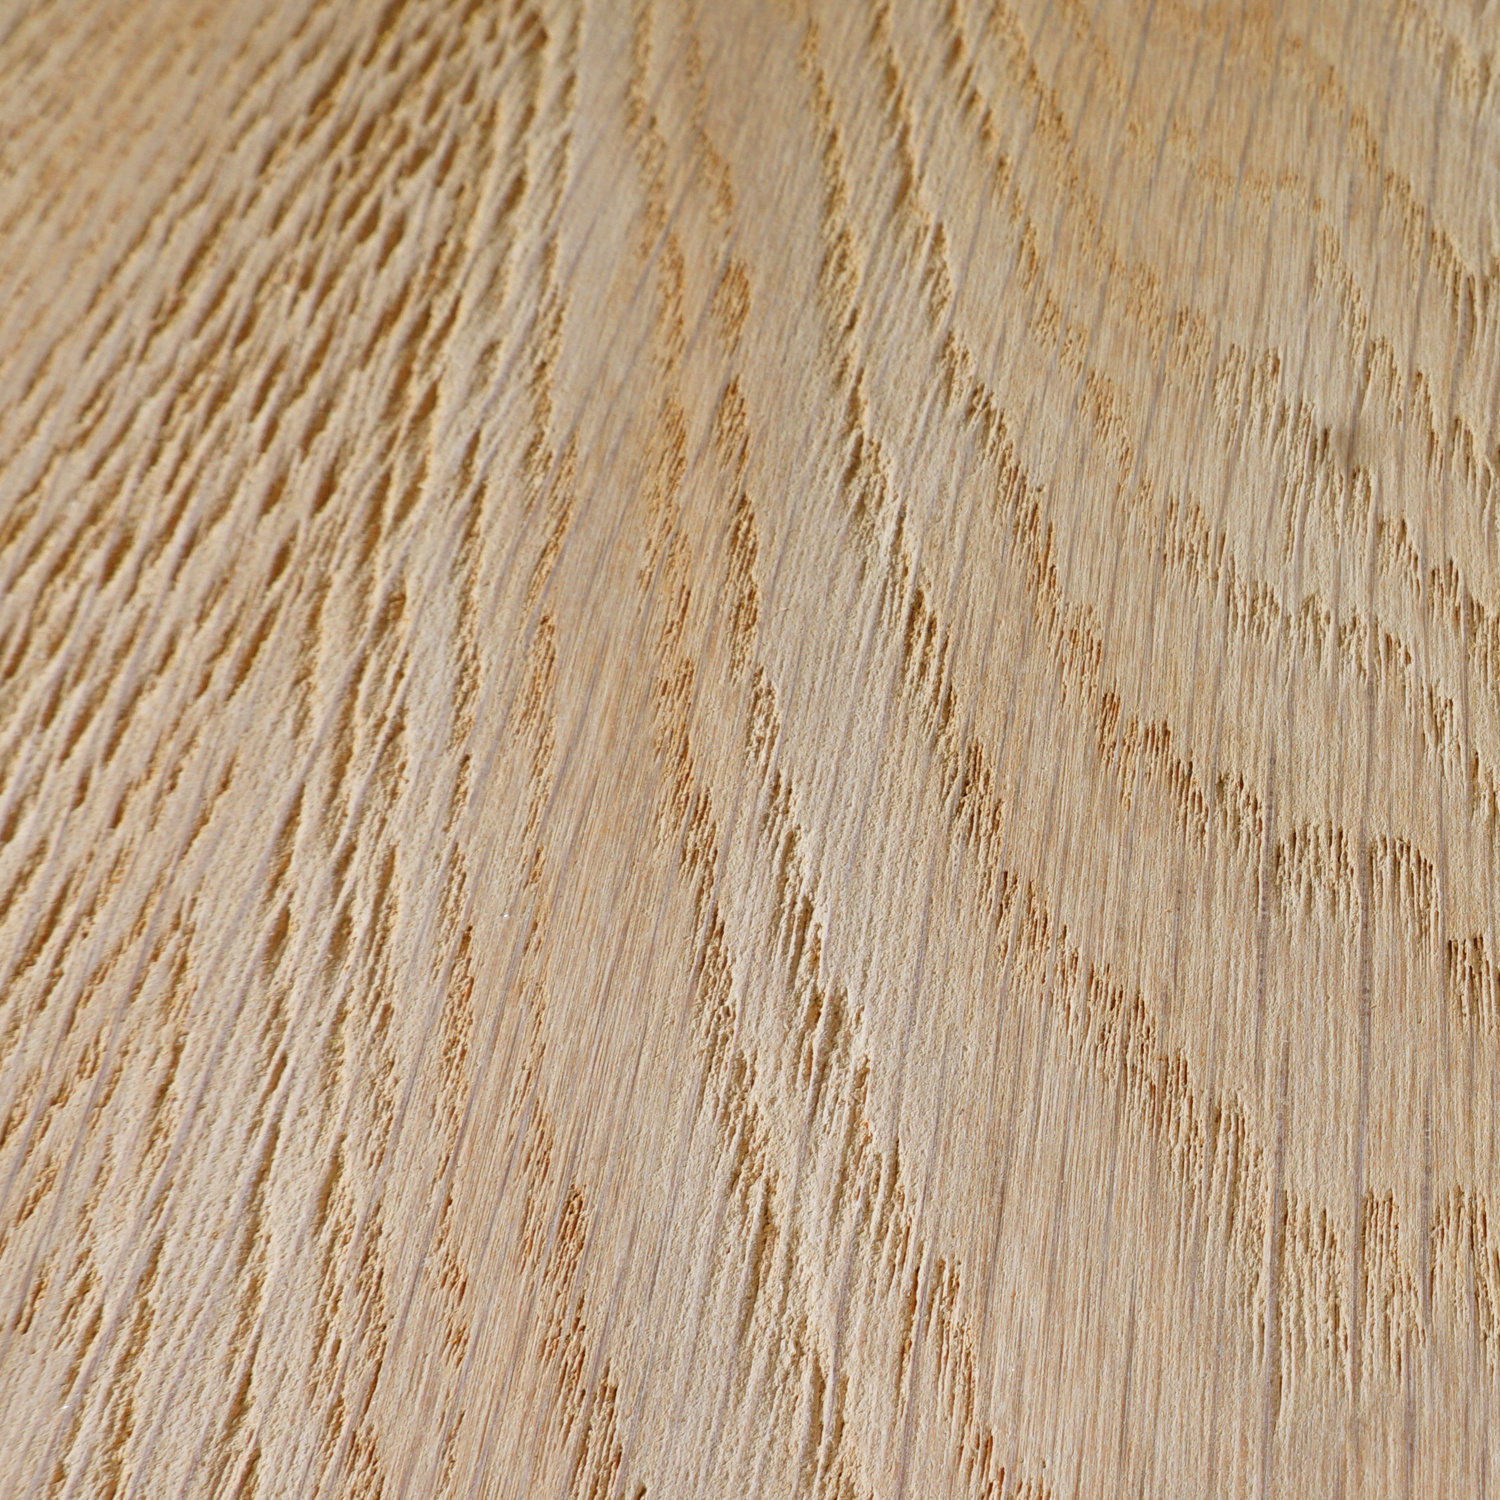  Leimholzplatte Eiche nach Maß - 3 cm dick - Eichenholz A-Qualität- Sandgestrahlt - Eiche Massivholzplatte - verleimt & künstlich getrocknet (HF 8-12%) - 15-120x20-350 cm